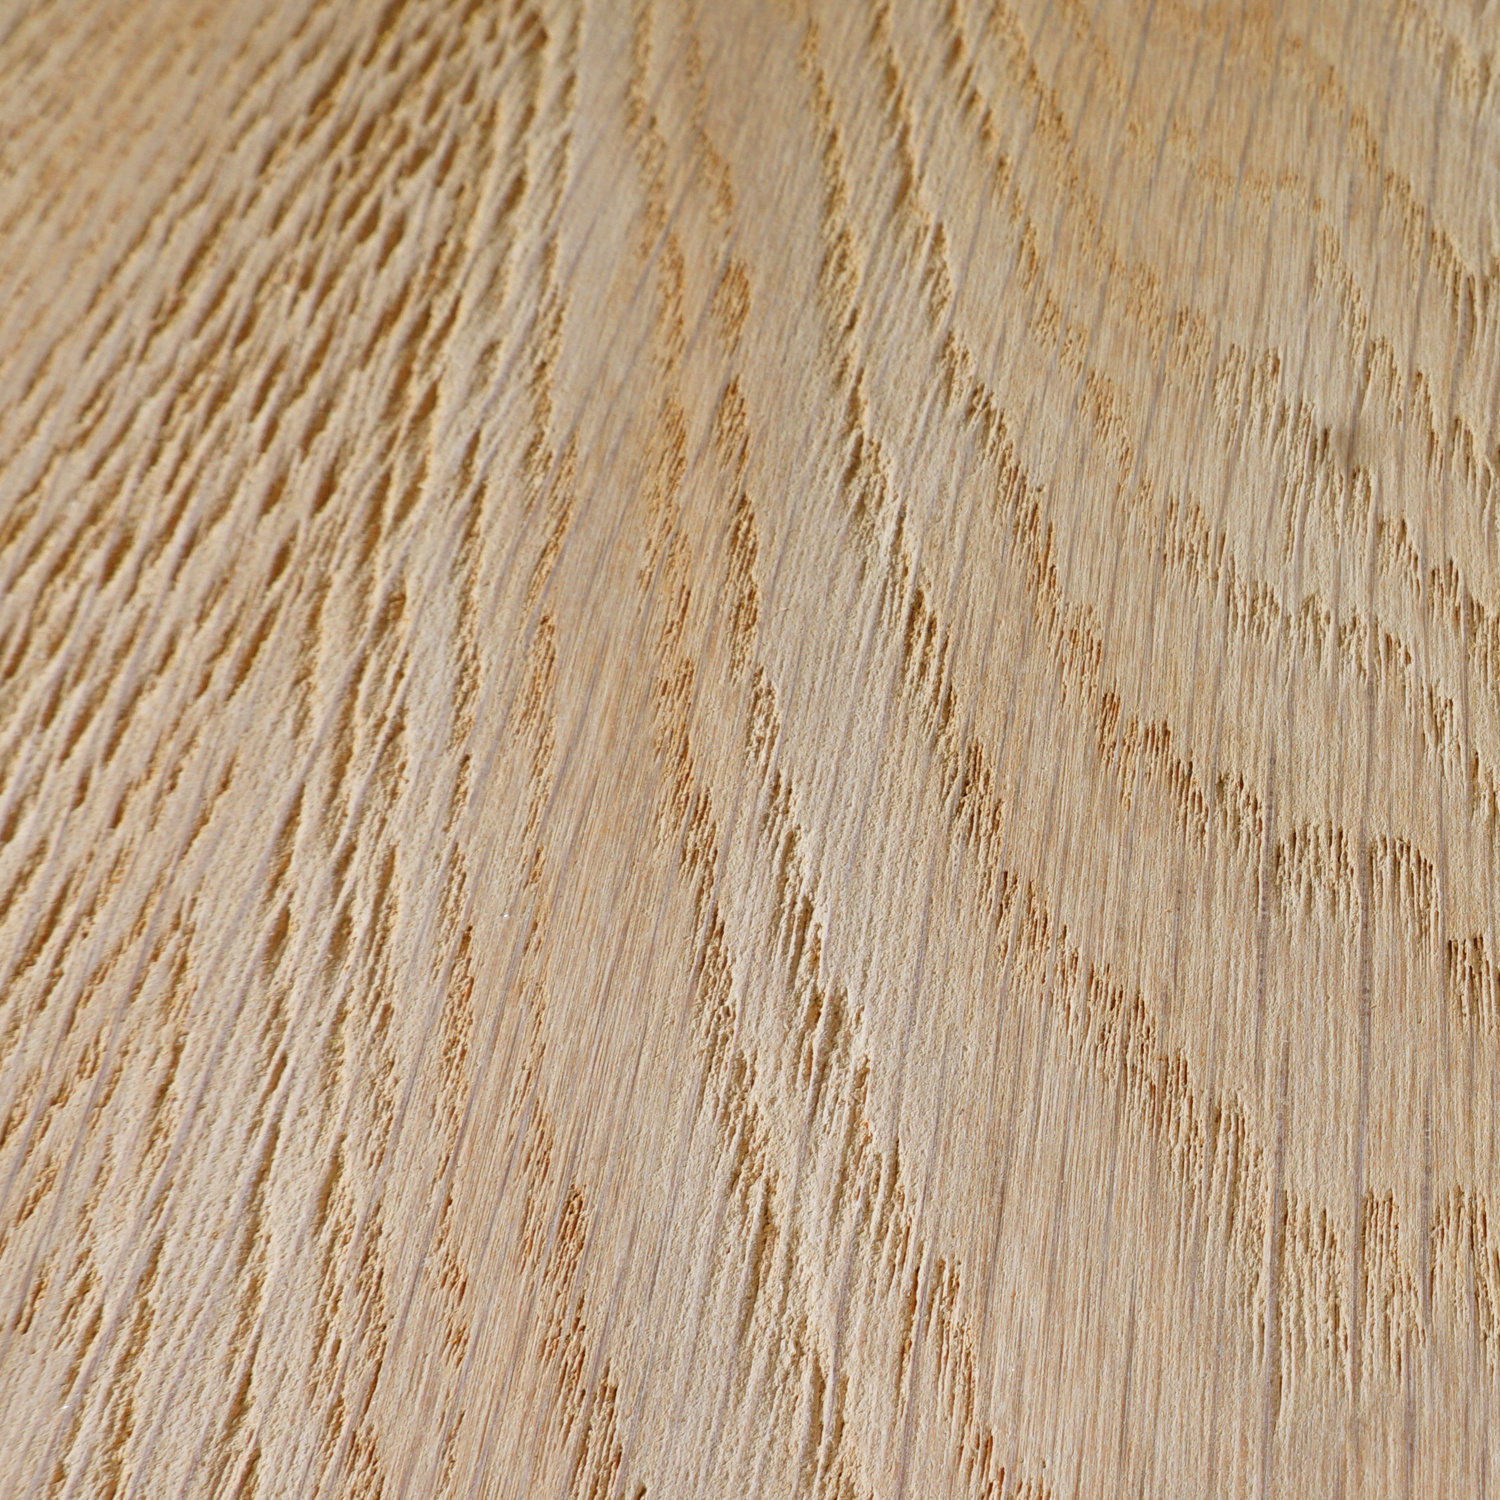  Leimholzplatte Eiche nach Maß - 3 cm dick - Eichenholz A-Qualität- Sandgestrahlt - Eiche Massivholzplatte - verleimt & künstlich getrocknet (HF 8-12%) - 15-120x20-350 cm